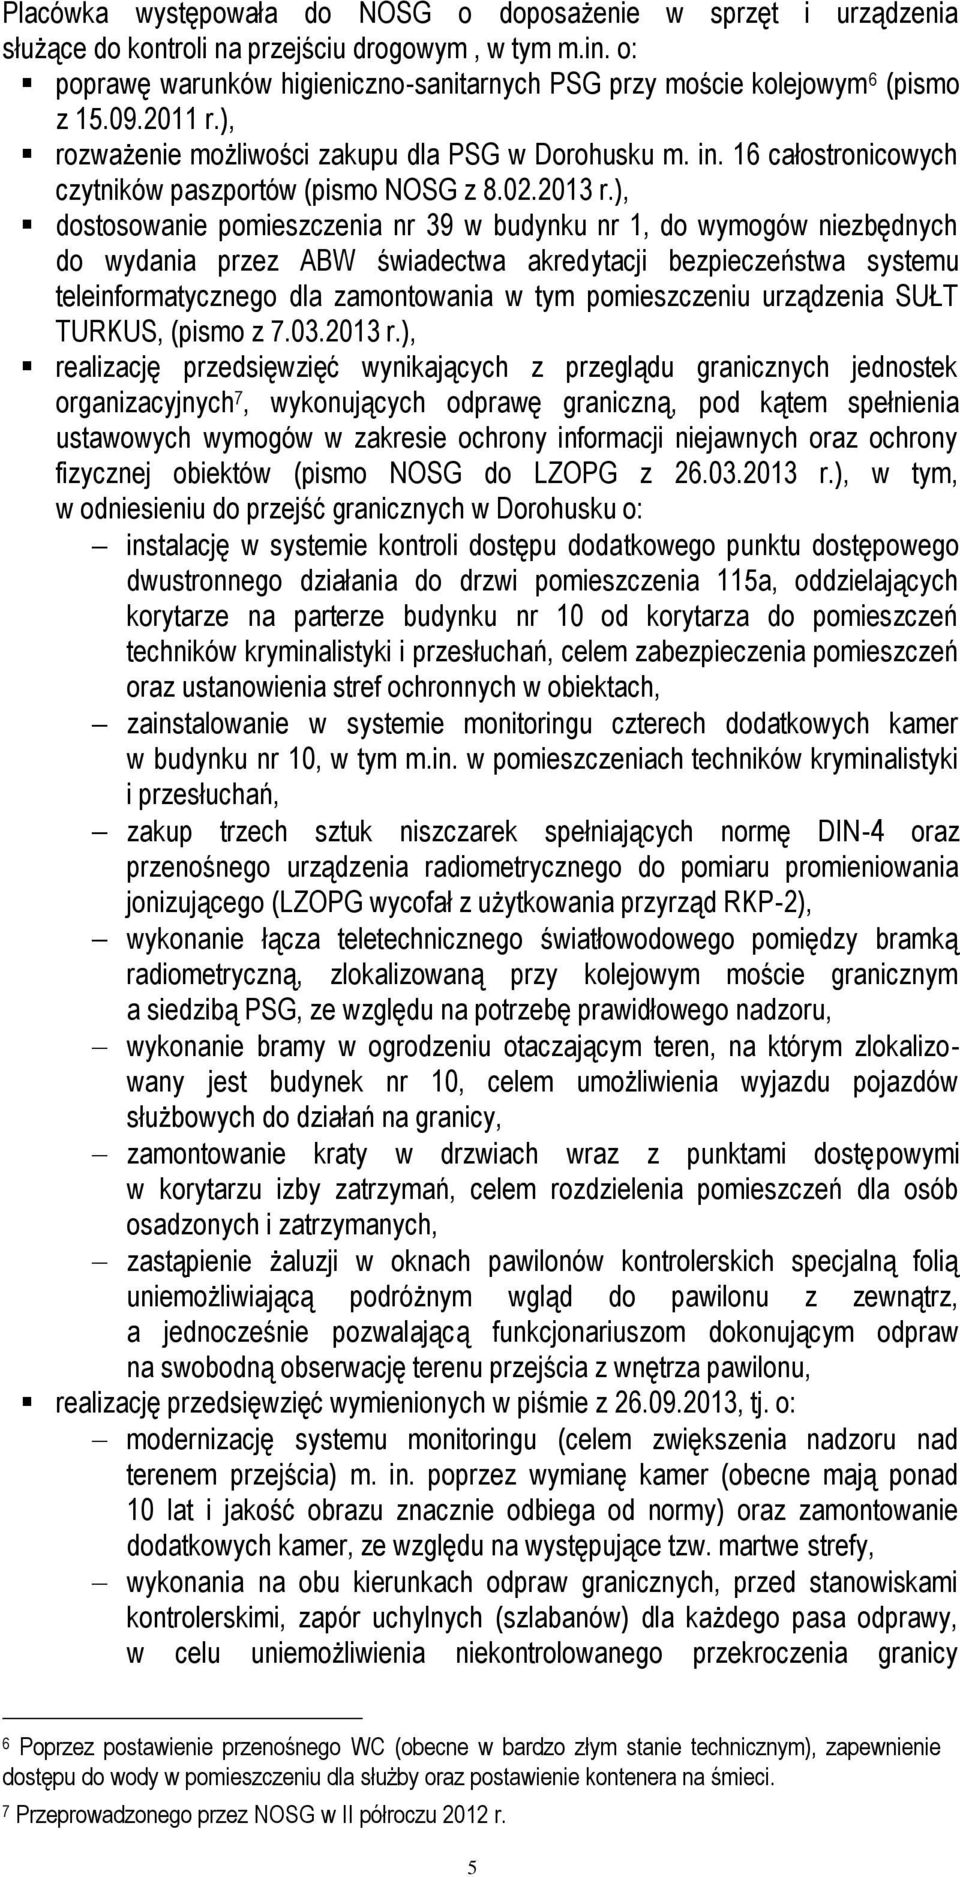 16 całostronicowych czytników paszportów (pismo NOSG z 8.02.2013 r.